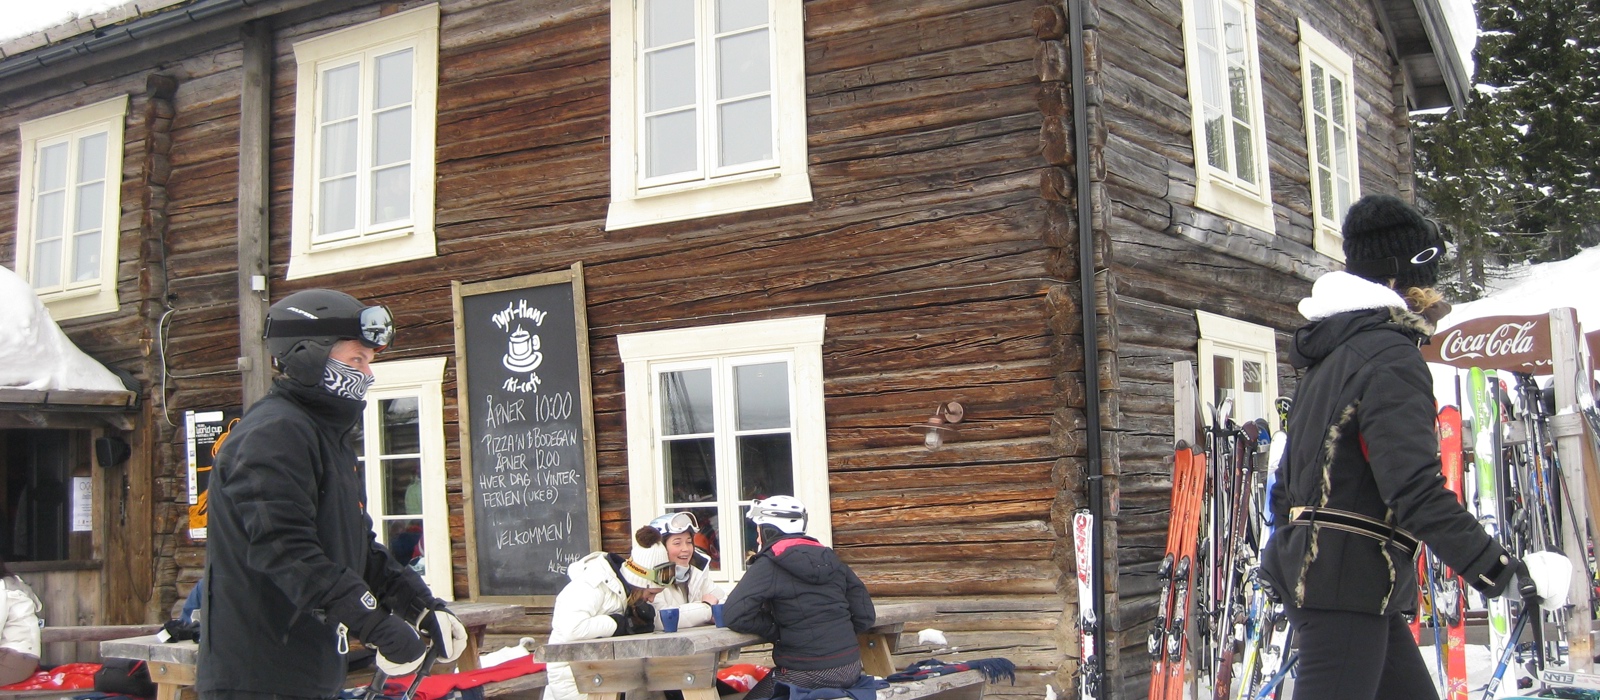 Tyri-Hans - populært sted for skiturister og hytteeiere i Kvitfjell. Foto: CEWG